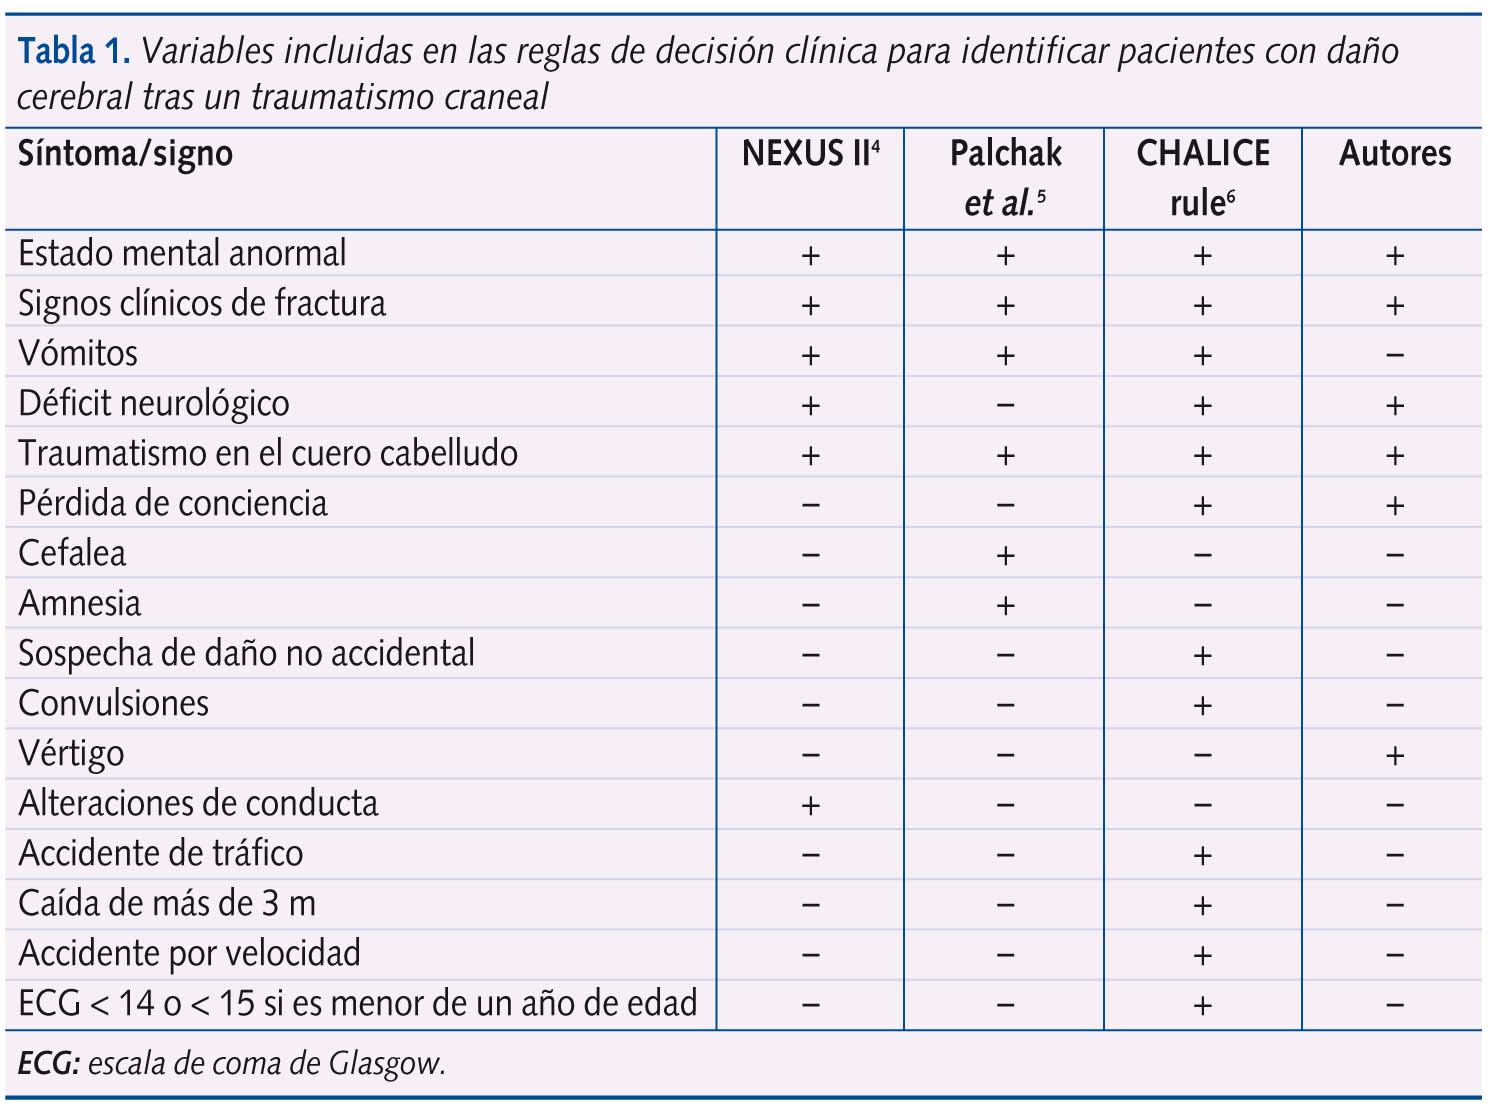 Tabla 1. Variables incluidas en las reglas de decisión clínica para identificar pacientes con daño cerebral tras un traumatismo craneal